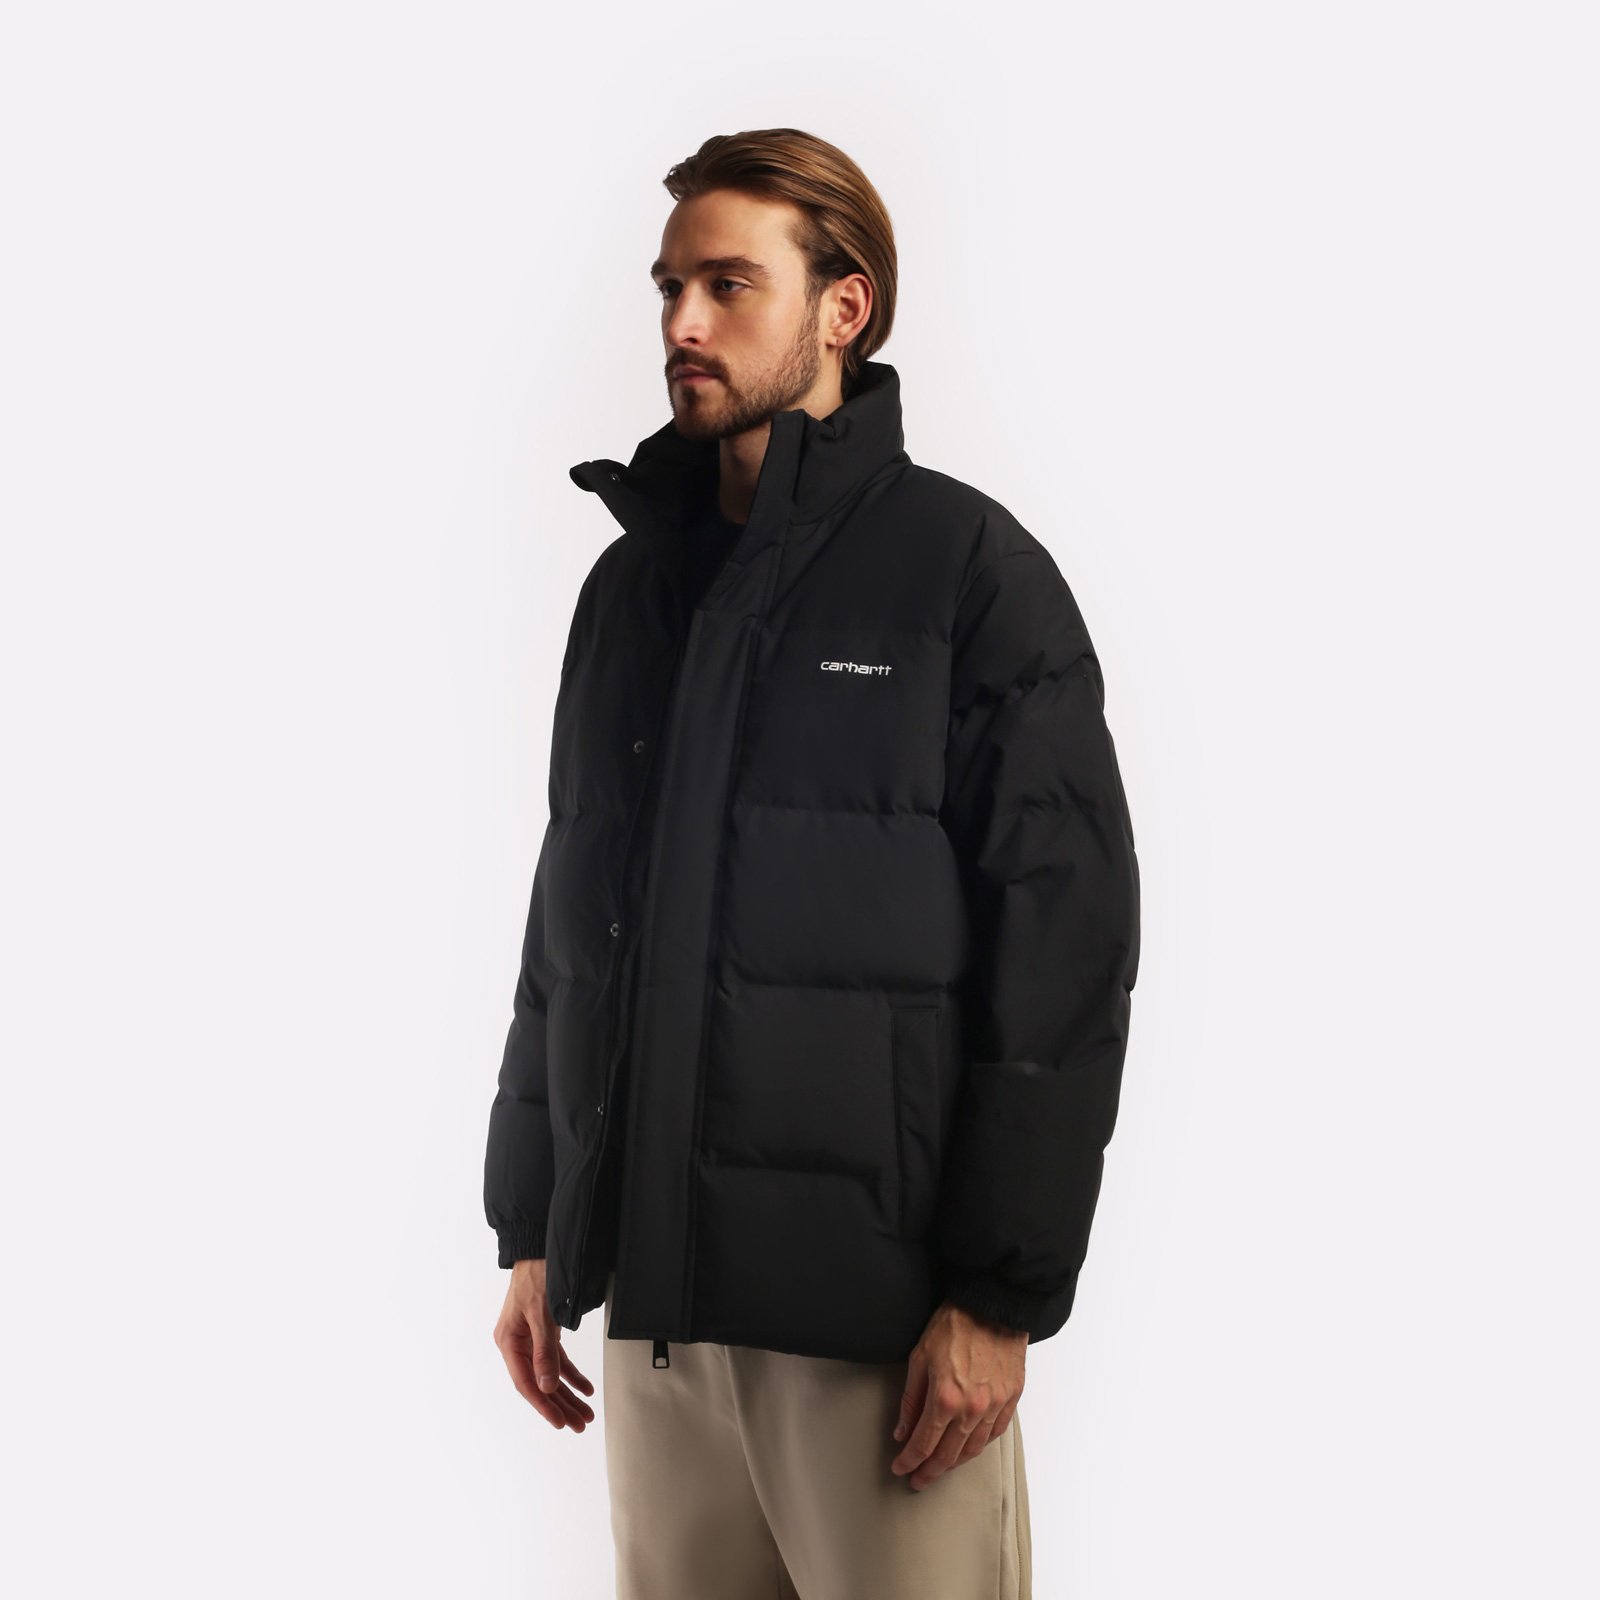 мужская куртка Carhartt WIP Danville Jacket  (I029450-black/wht)  - цена, описание, фото 3